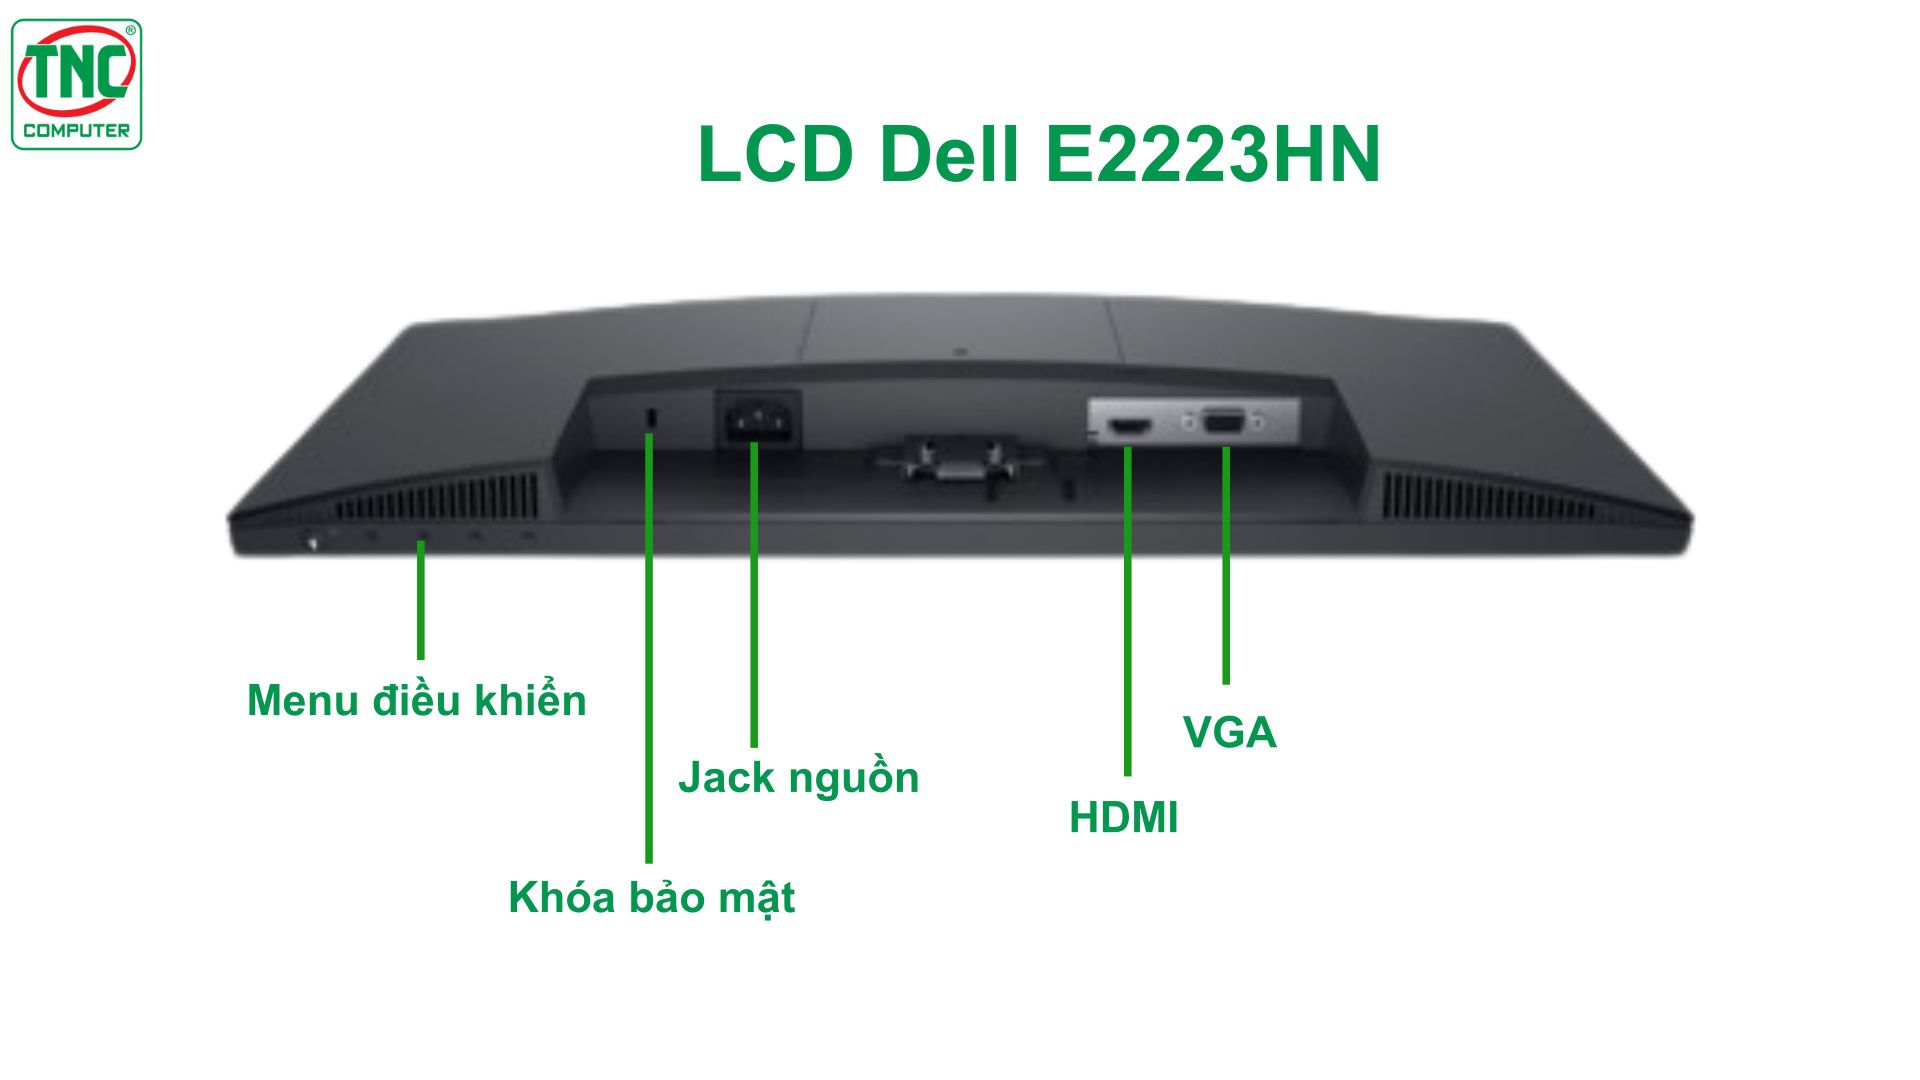 Màn hình LCD Dell E2223HN